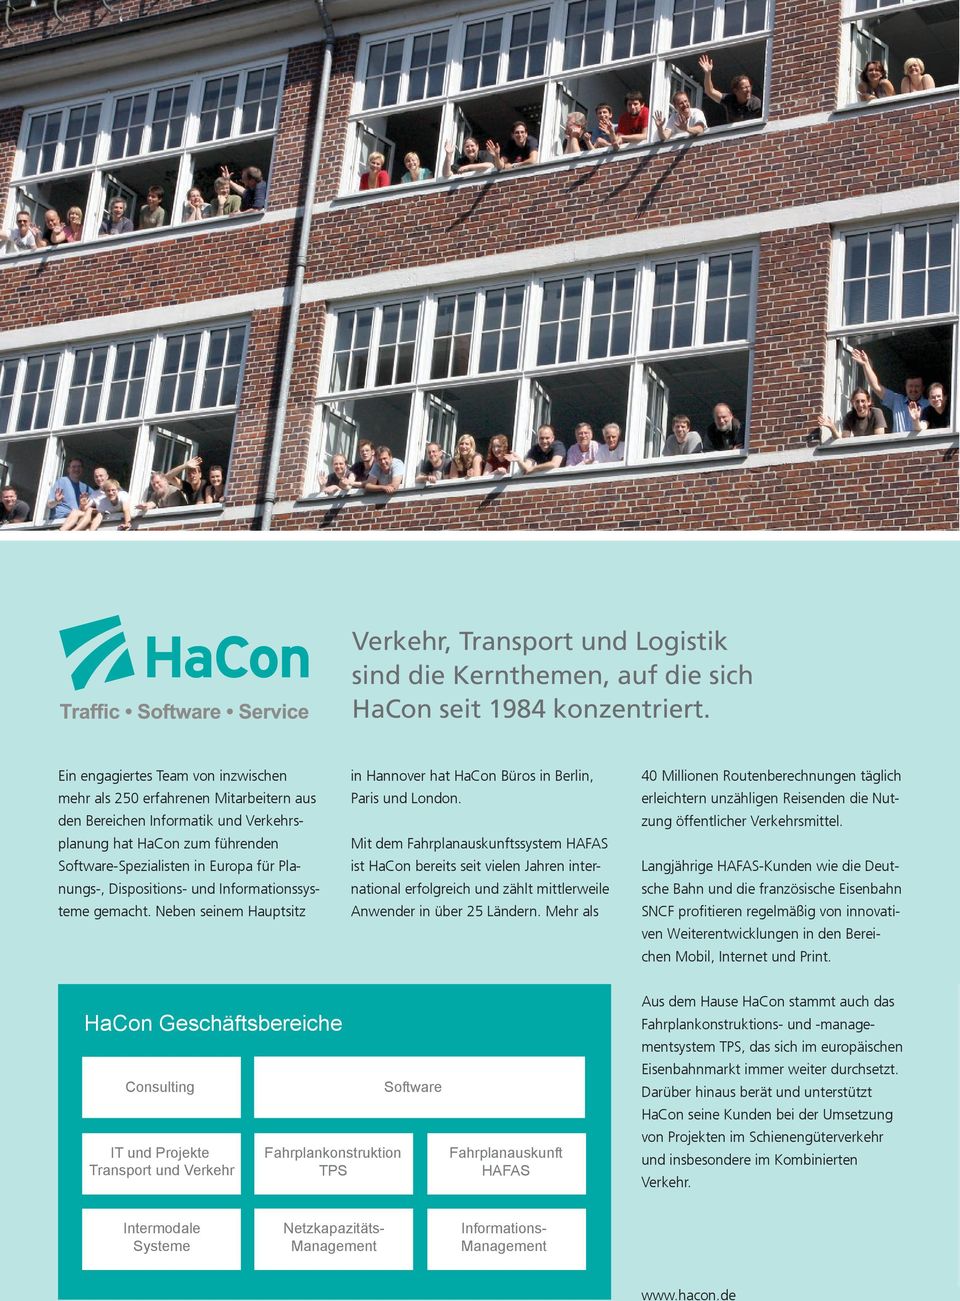 Dispositions- und Informationssysteme gemacht. Neben seinem Hauptsitz in Hannover hat HaCon Büros in Berlin, Paris und London.